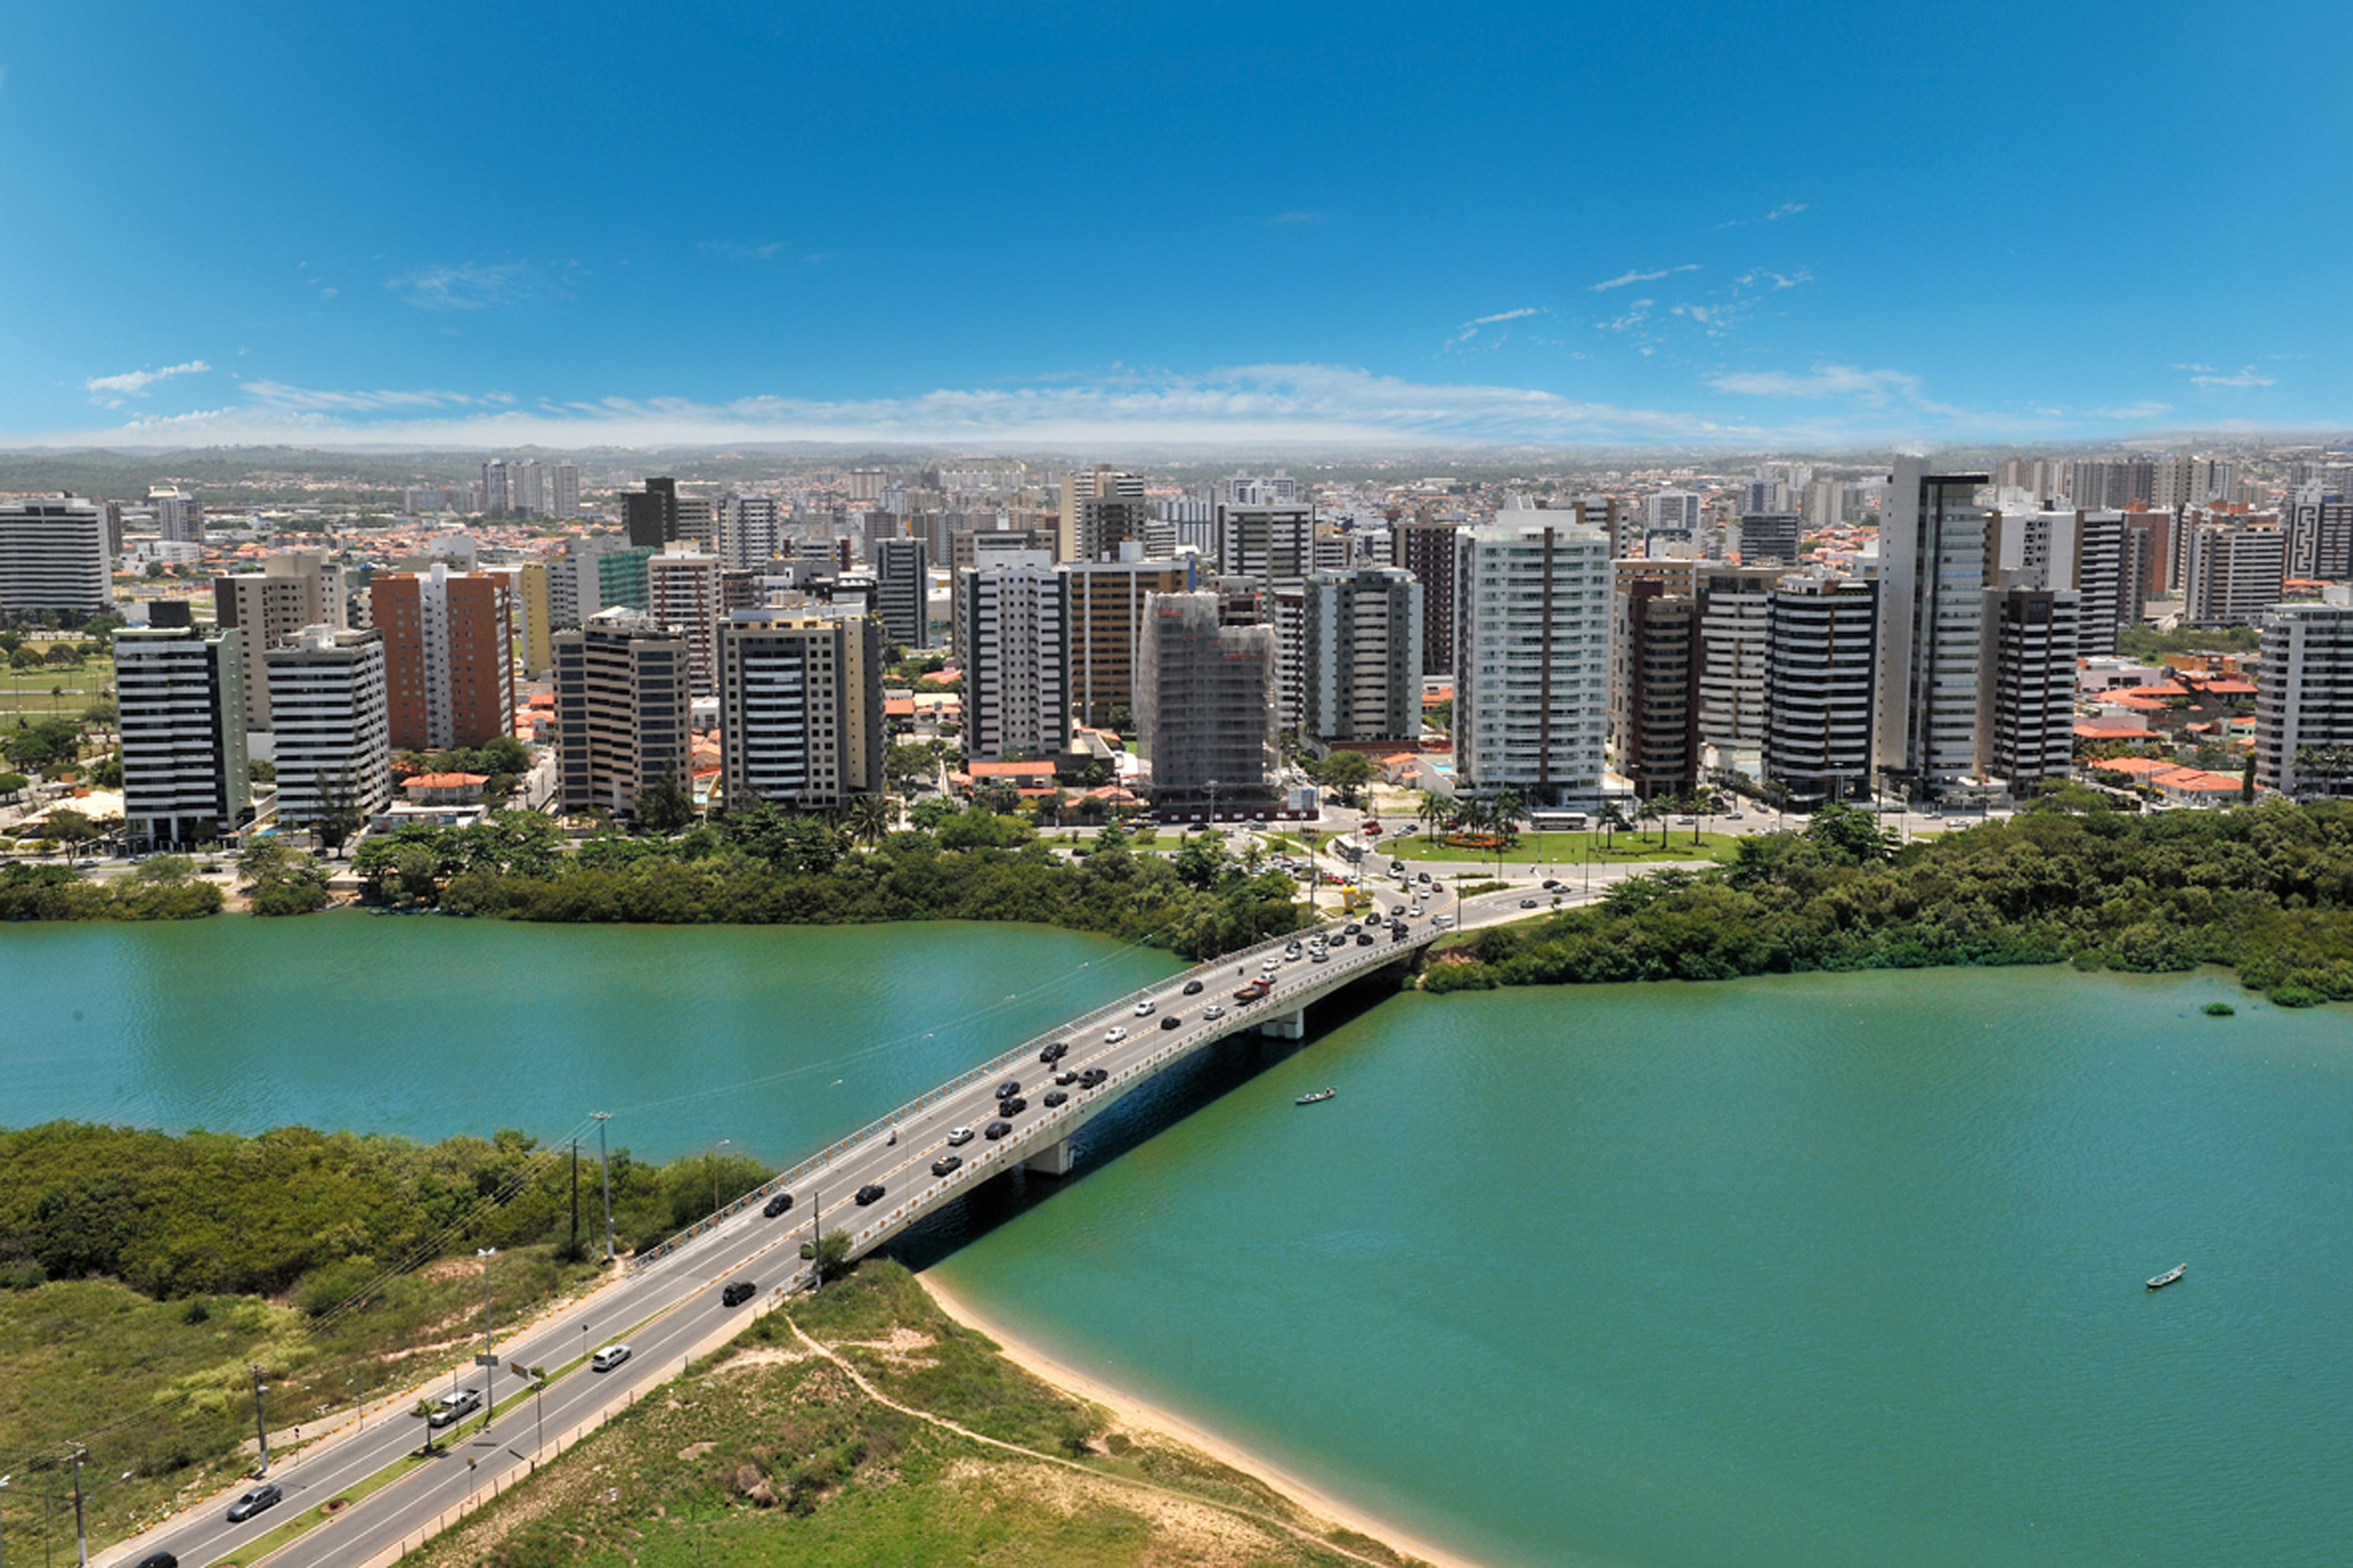 Aracaju chega aos 160 anos sem Plano Diretor. A capital cresce à revelia sem planejamento urbano